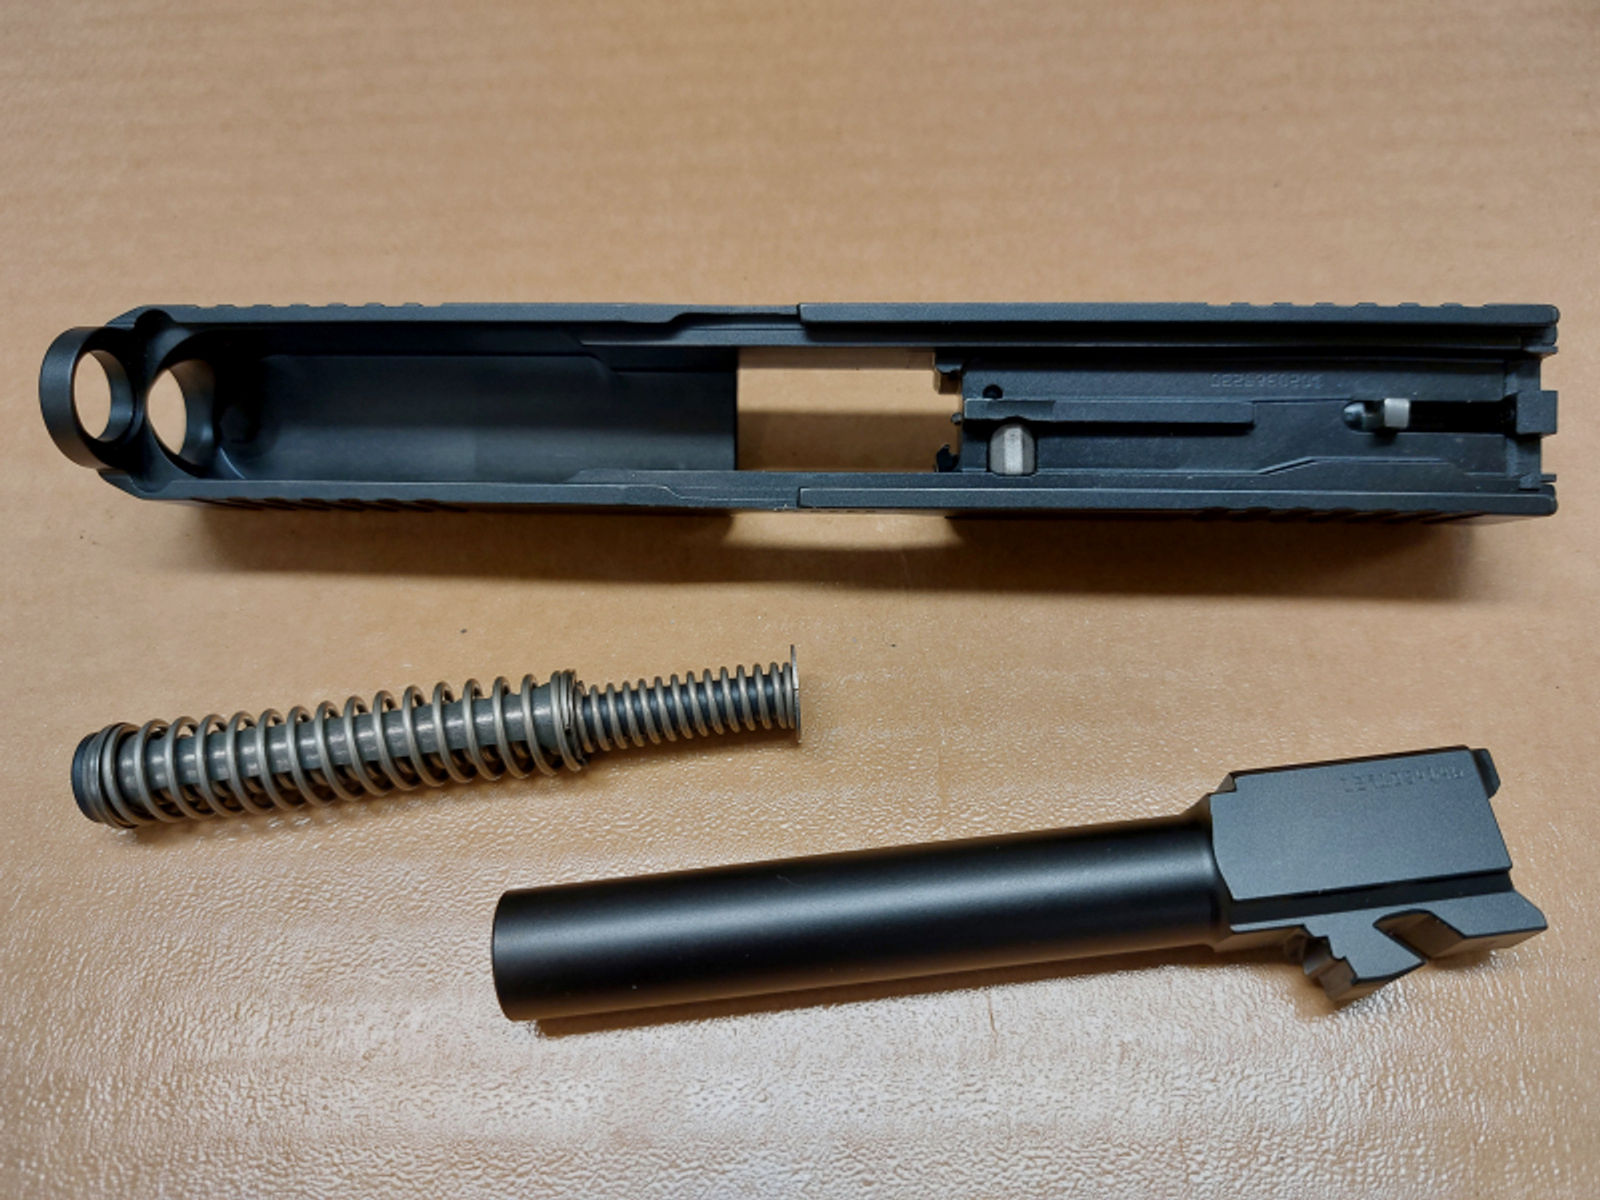 GLOCK 17 Gen. 5 Wechselsystem 9mm Luger, Neu und unbenutzt